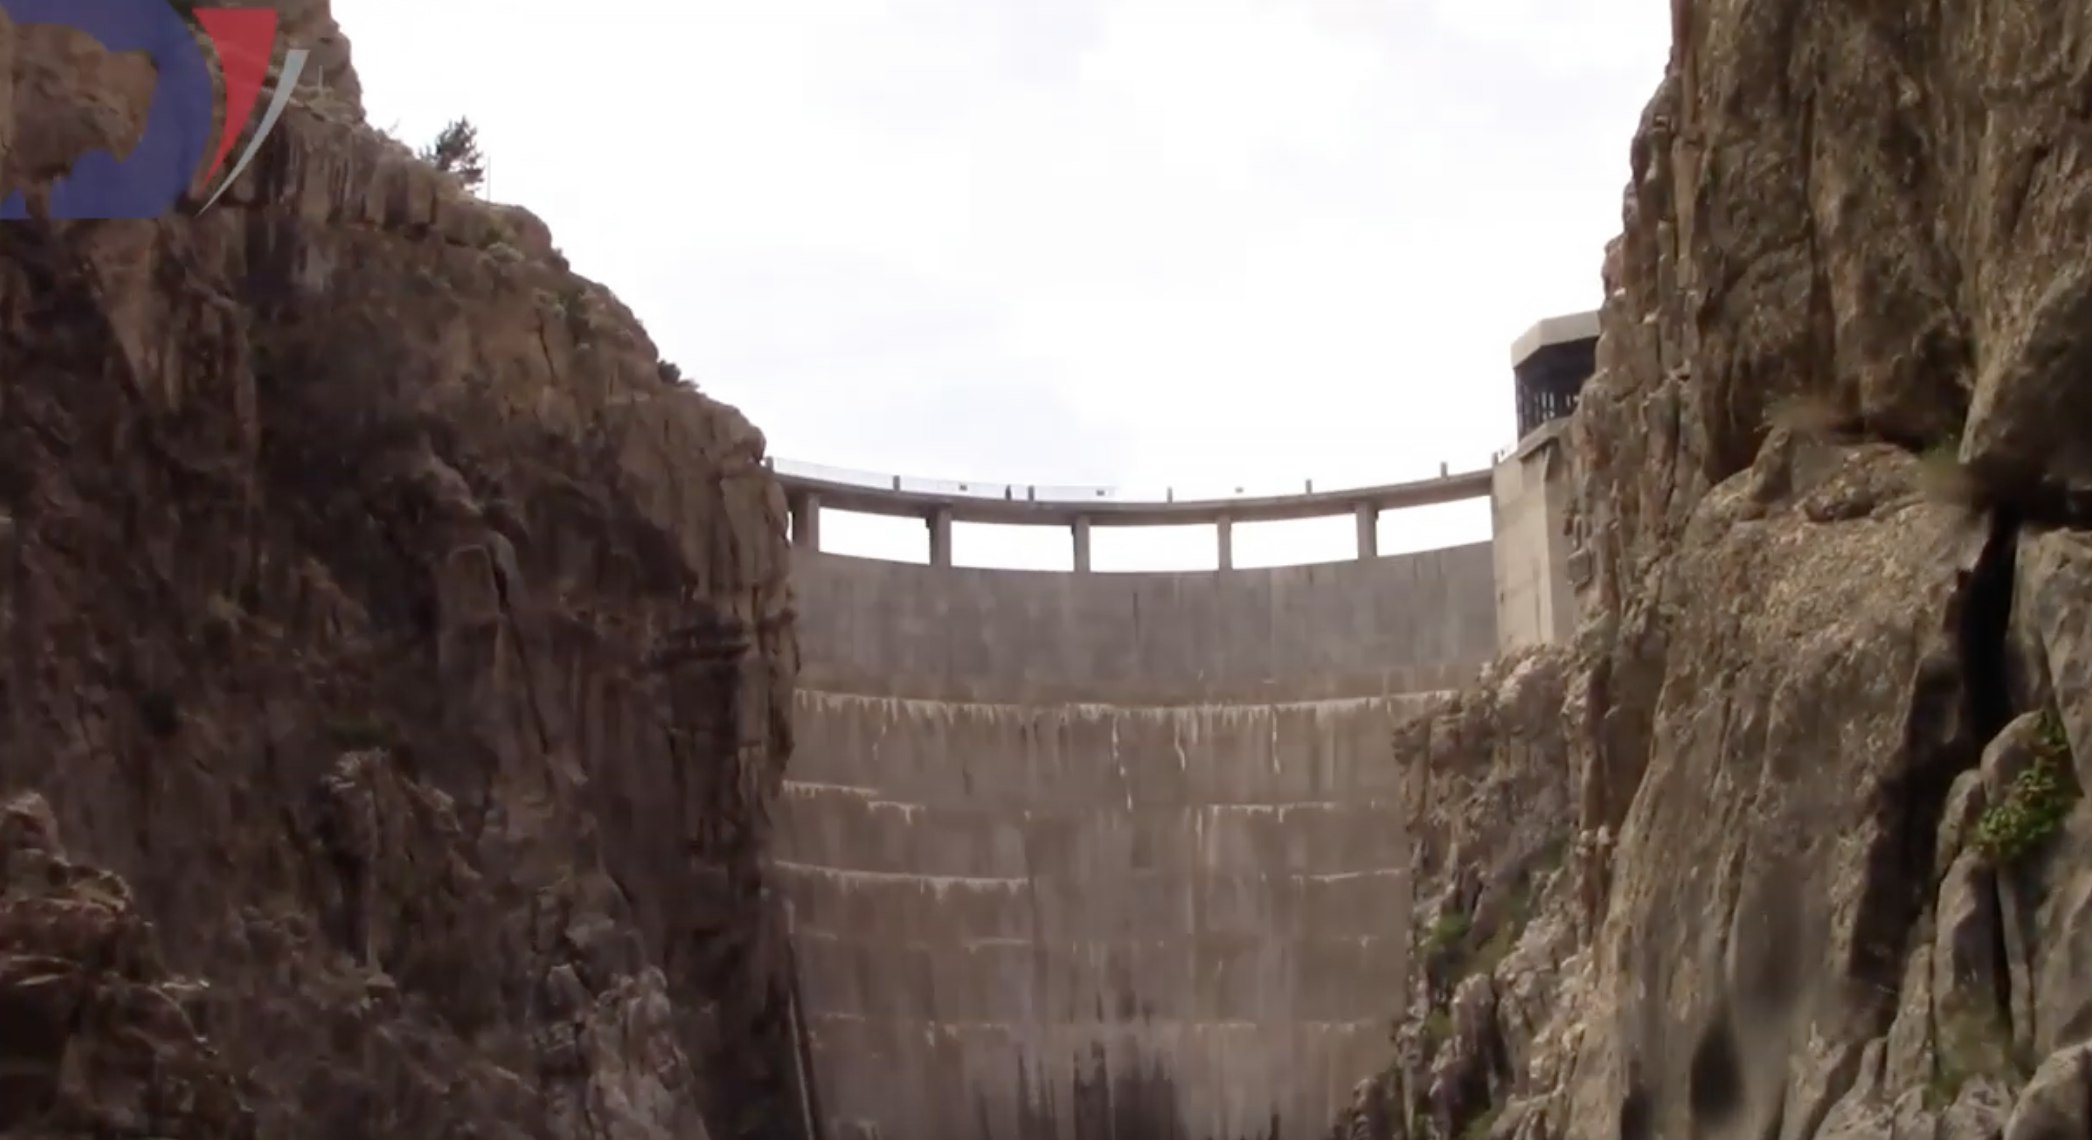 Buffalo Bill Dam expansion